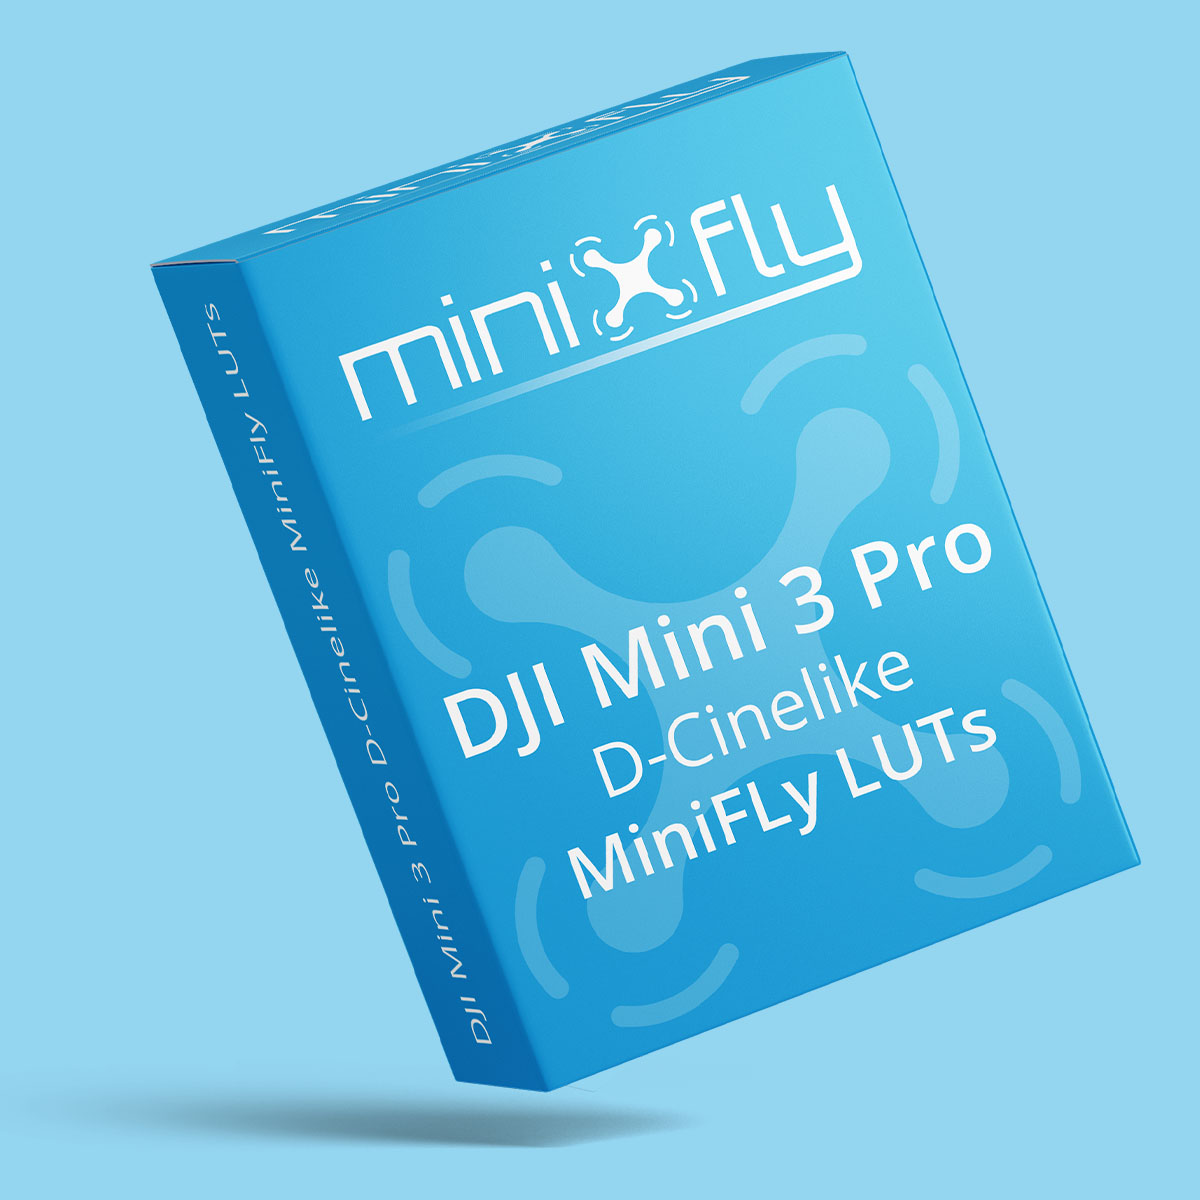 MiniFly LUTs dla DJI Mini 3 Pro